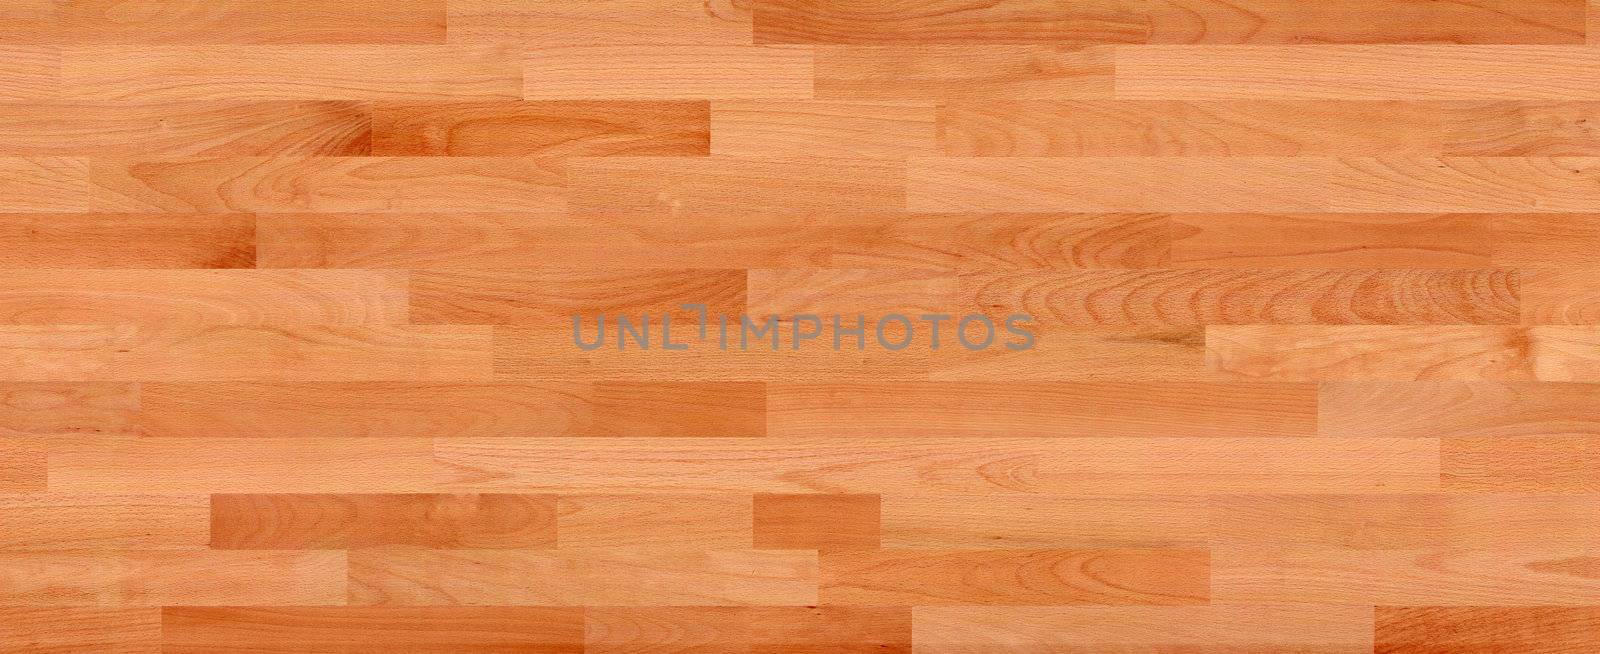 wood floor by mereutaandrei